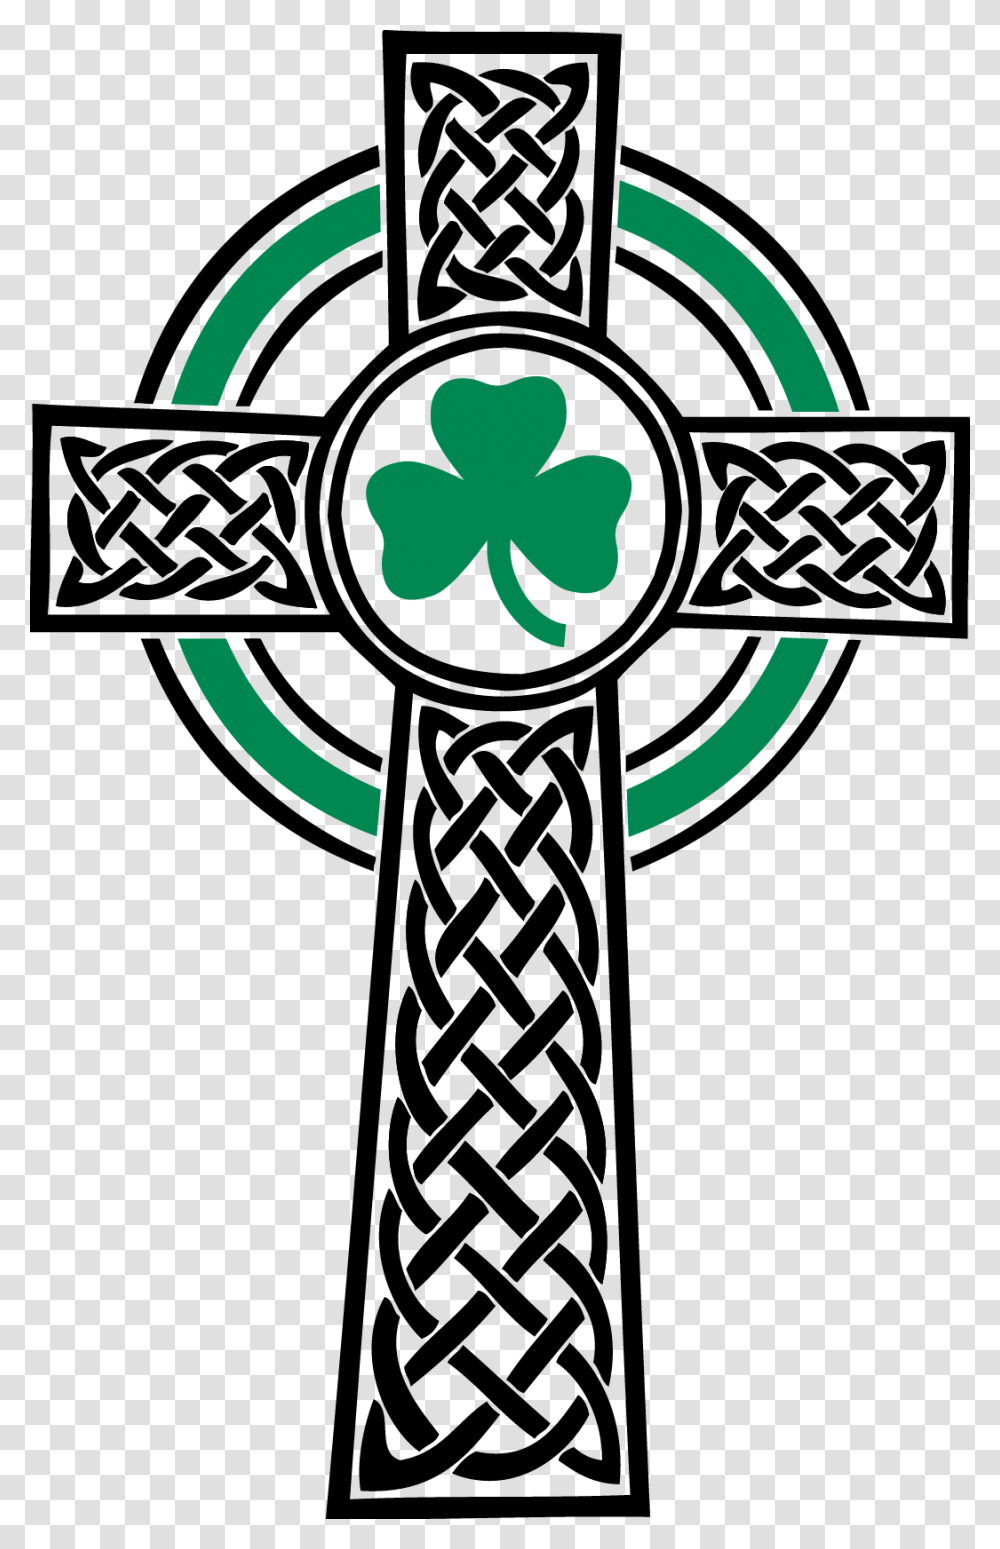 St Patricks Celtic Cross Saint Patrick's Day Celtic Cross, Crucifix, Emblem Transparent Png